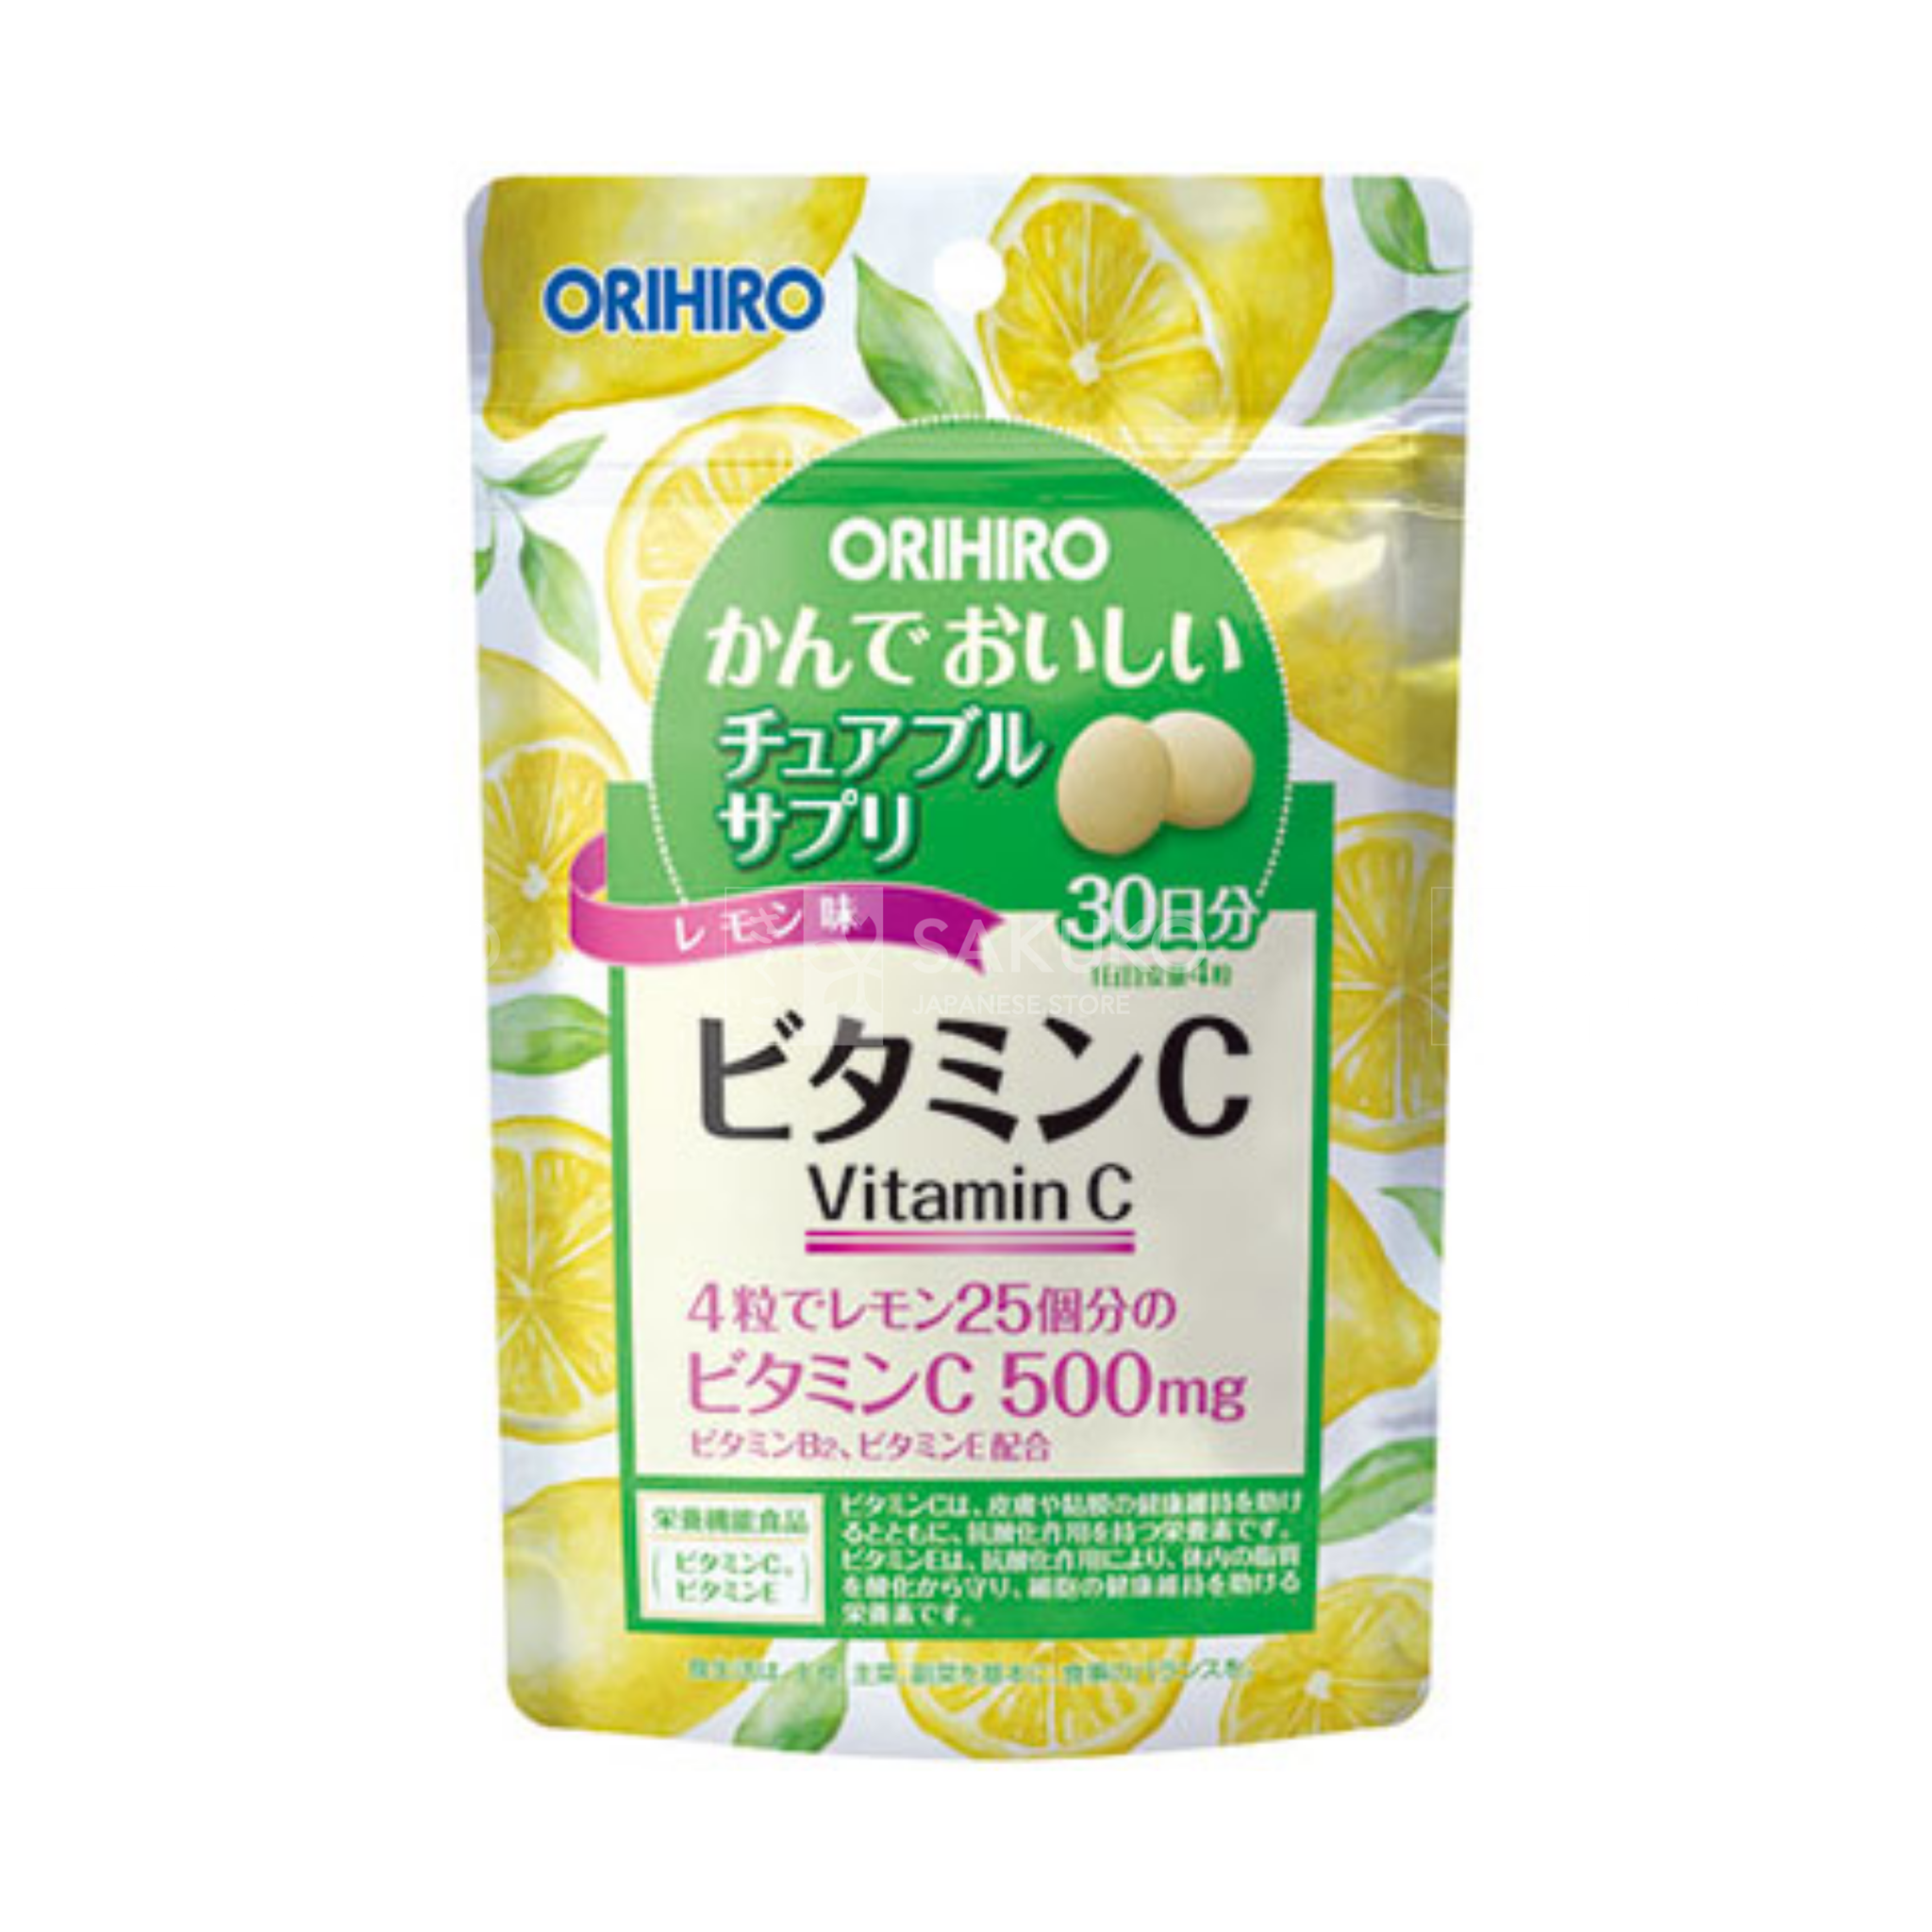  ORIHIRO- Viên uống bổ sung Vitamin C (120 viên) 